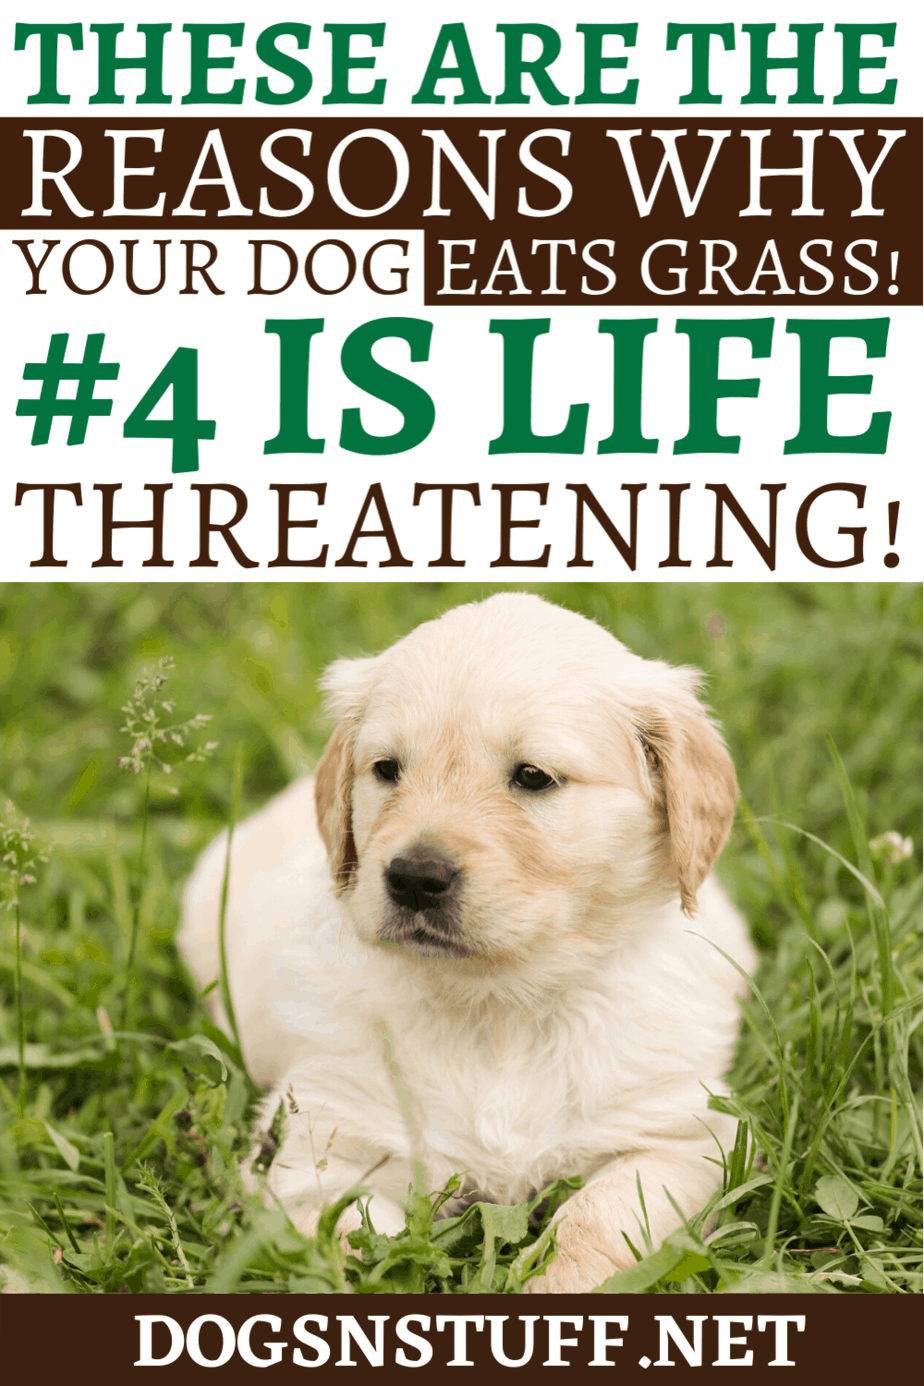 why do golden retrievers eat grass